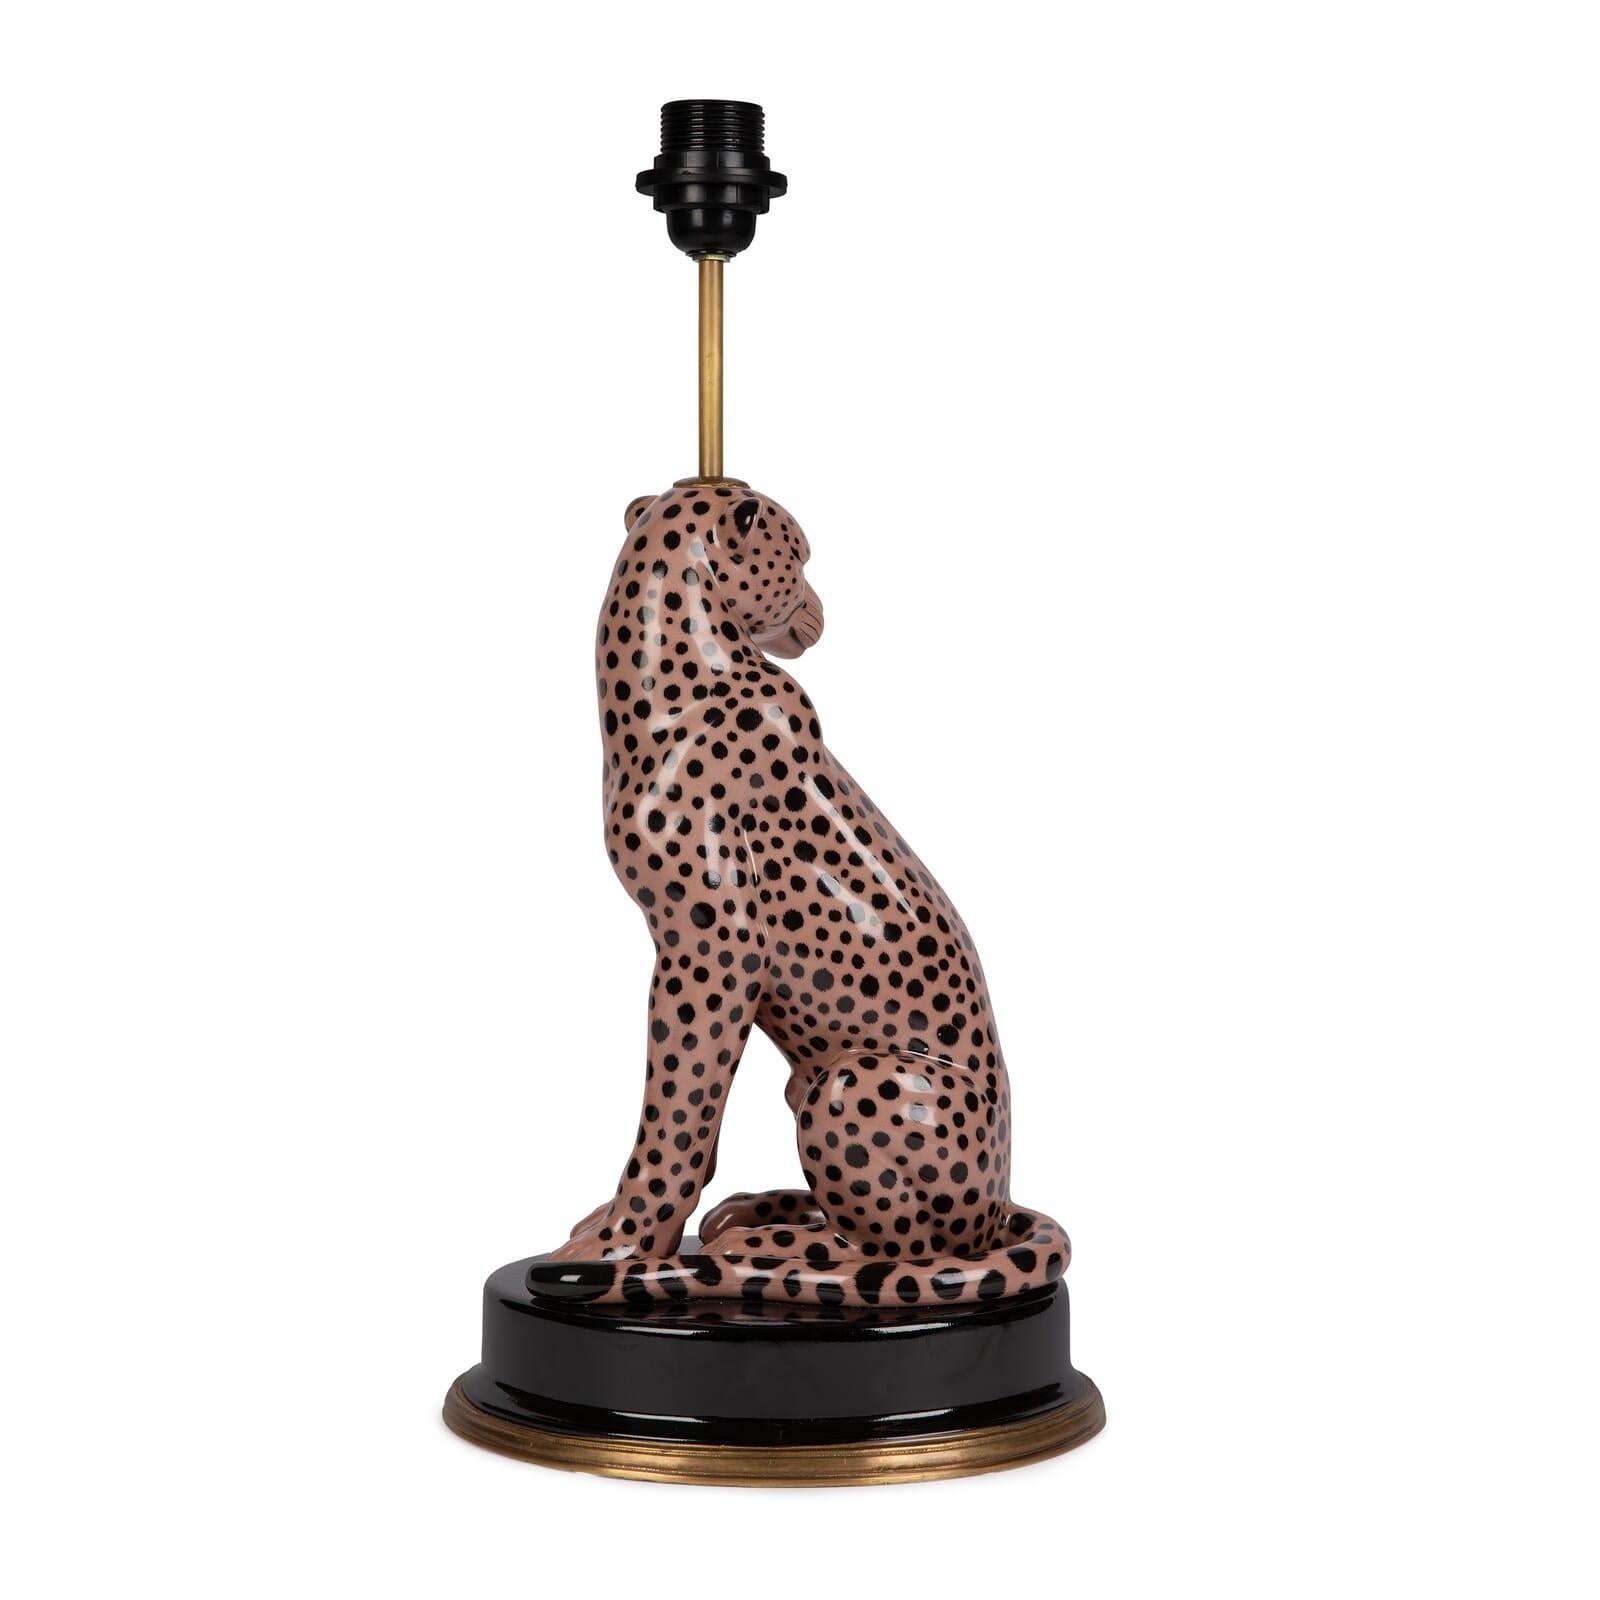 Faites entrer la beauté du règne animal dans votre maison avec ce superbe lampadaire en forme de guépard. Fabriqué en porcelaine peinte à la main et doté d'un cadre en laiton à la base, ce support 